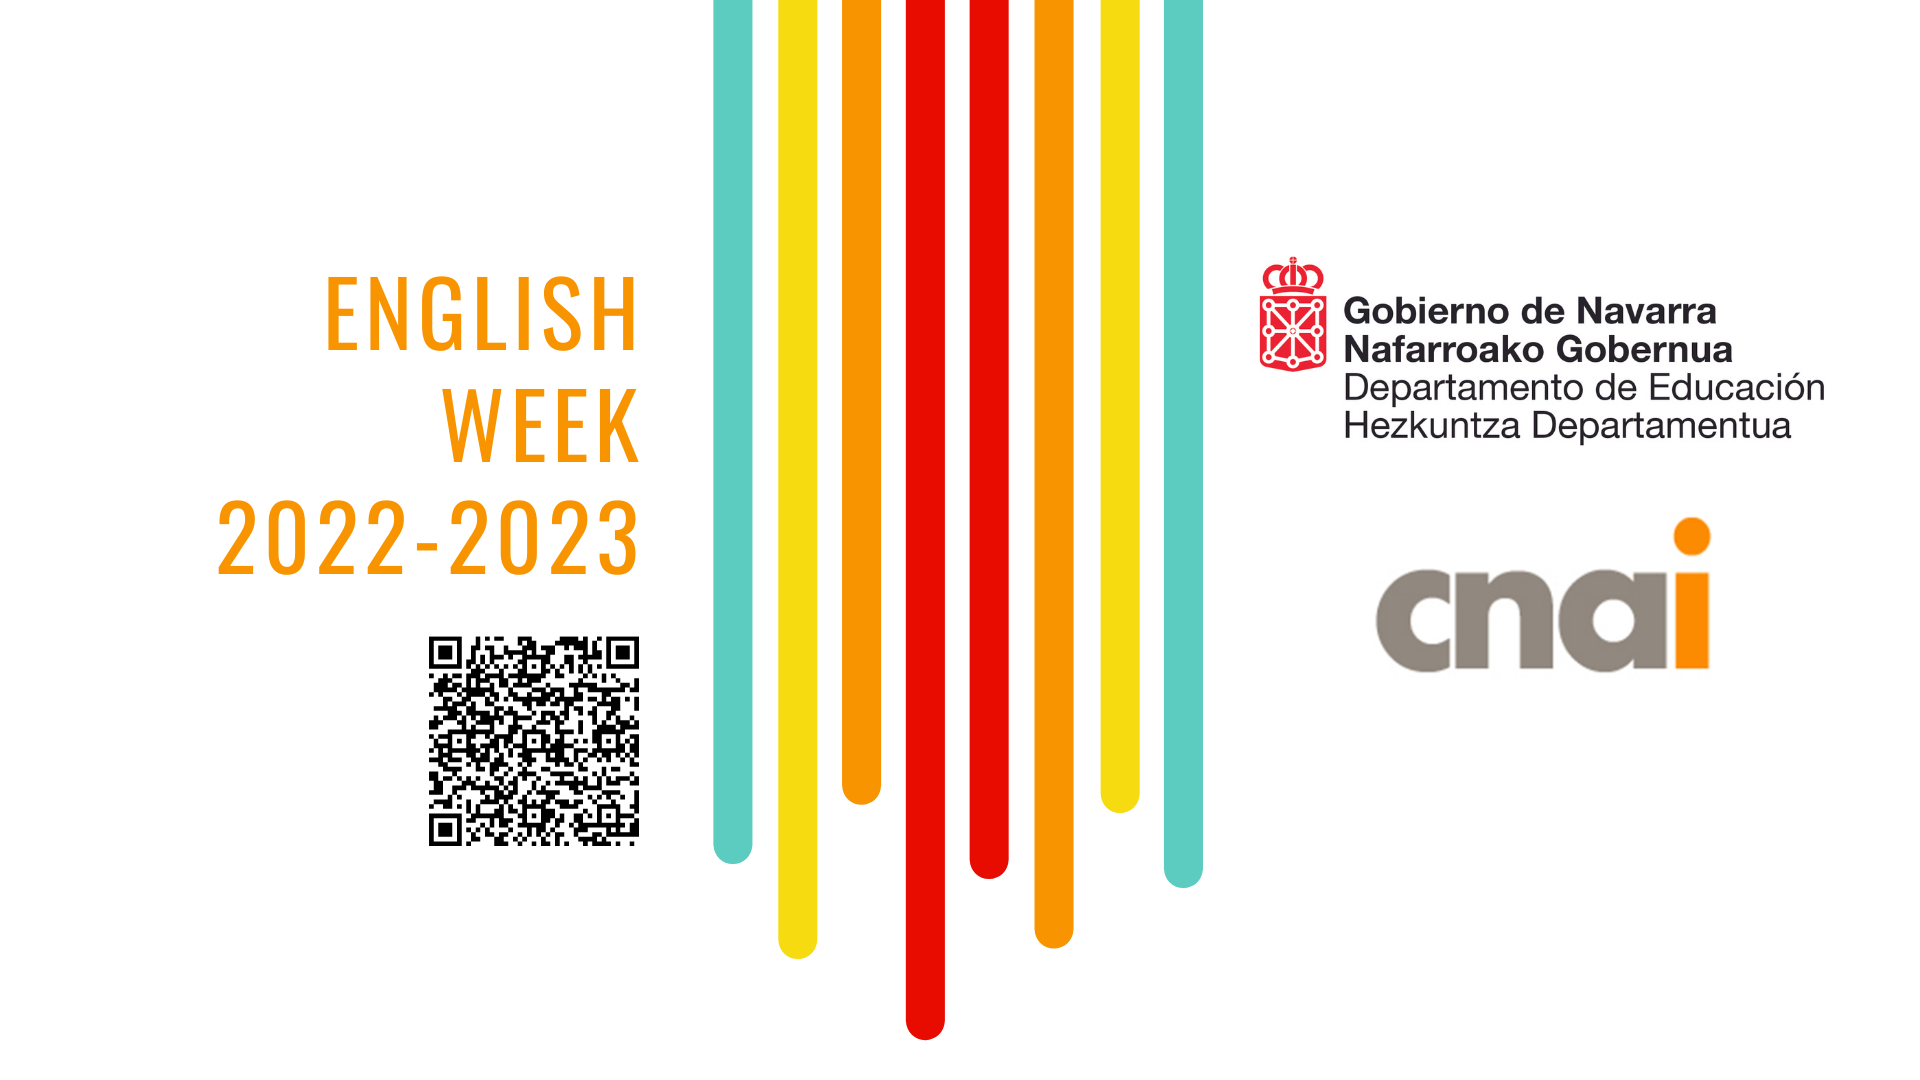 Lekaroz eta Sendavivako Murgiltze Linguistikorako Zentroa izango dira English Week-en egoitzak 2022-2023 ikasturtean